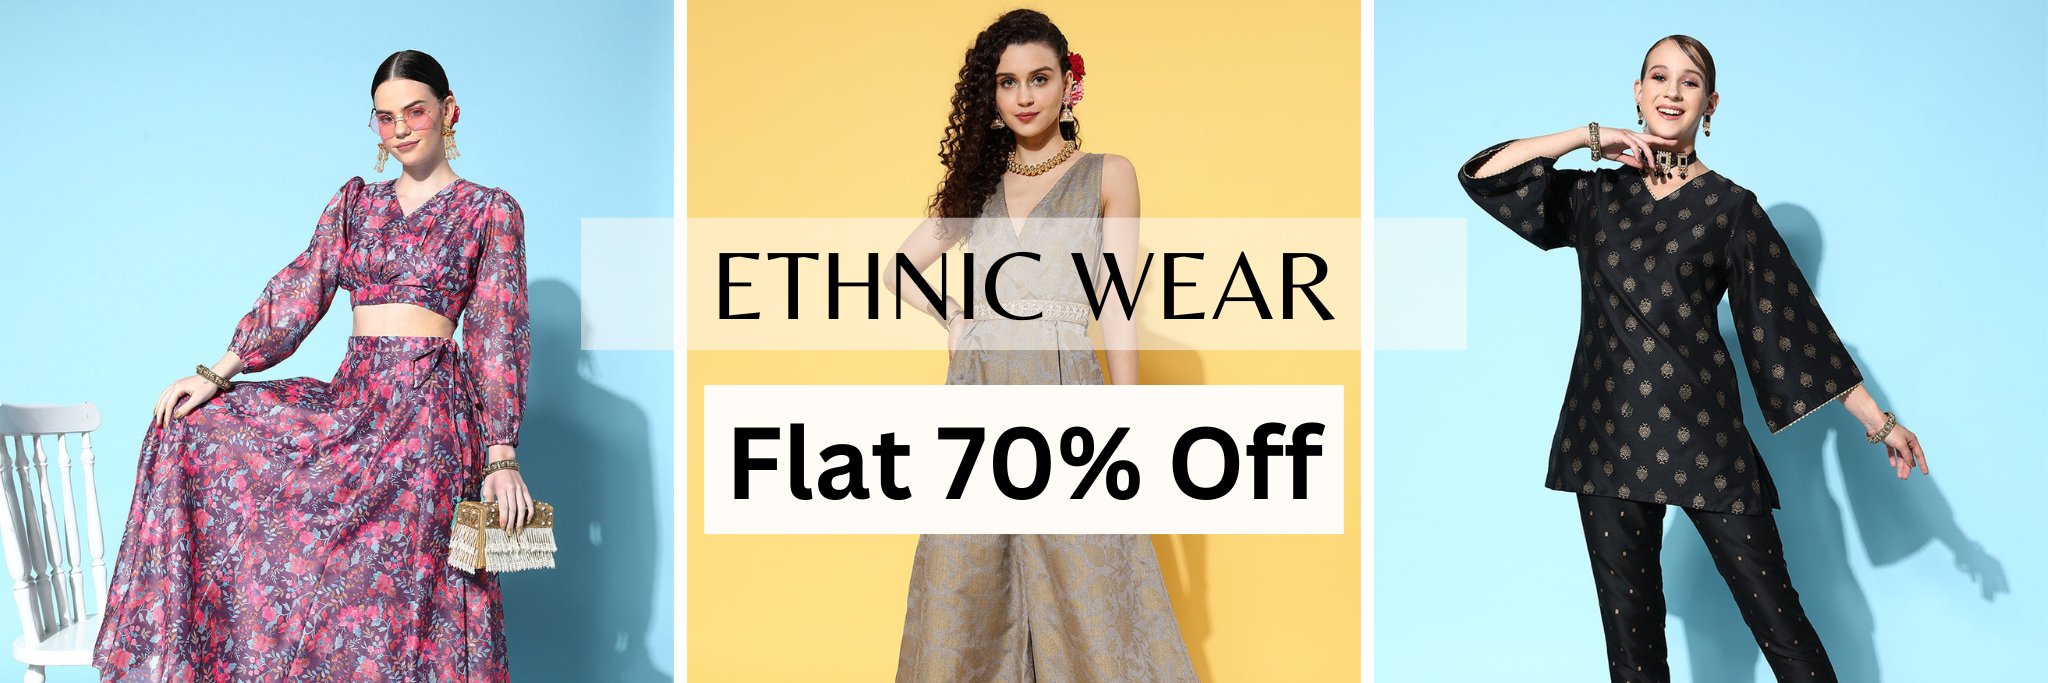 Ethnic Wear - Flat 70% Off